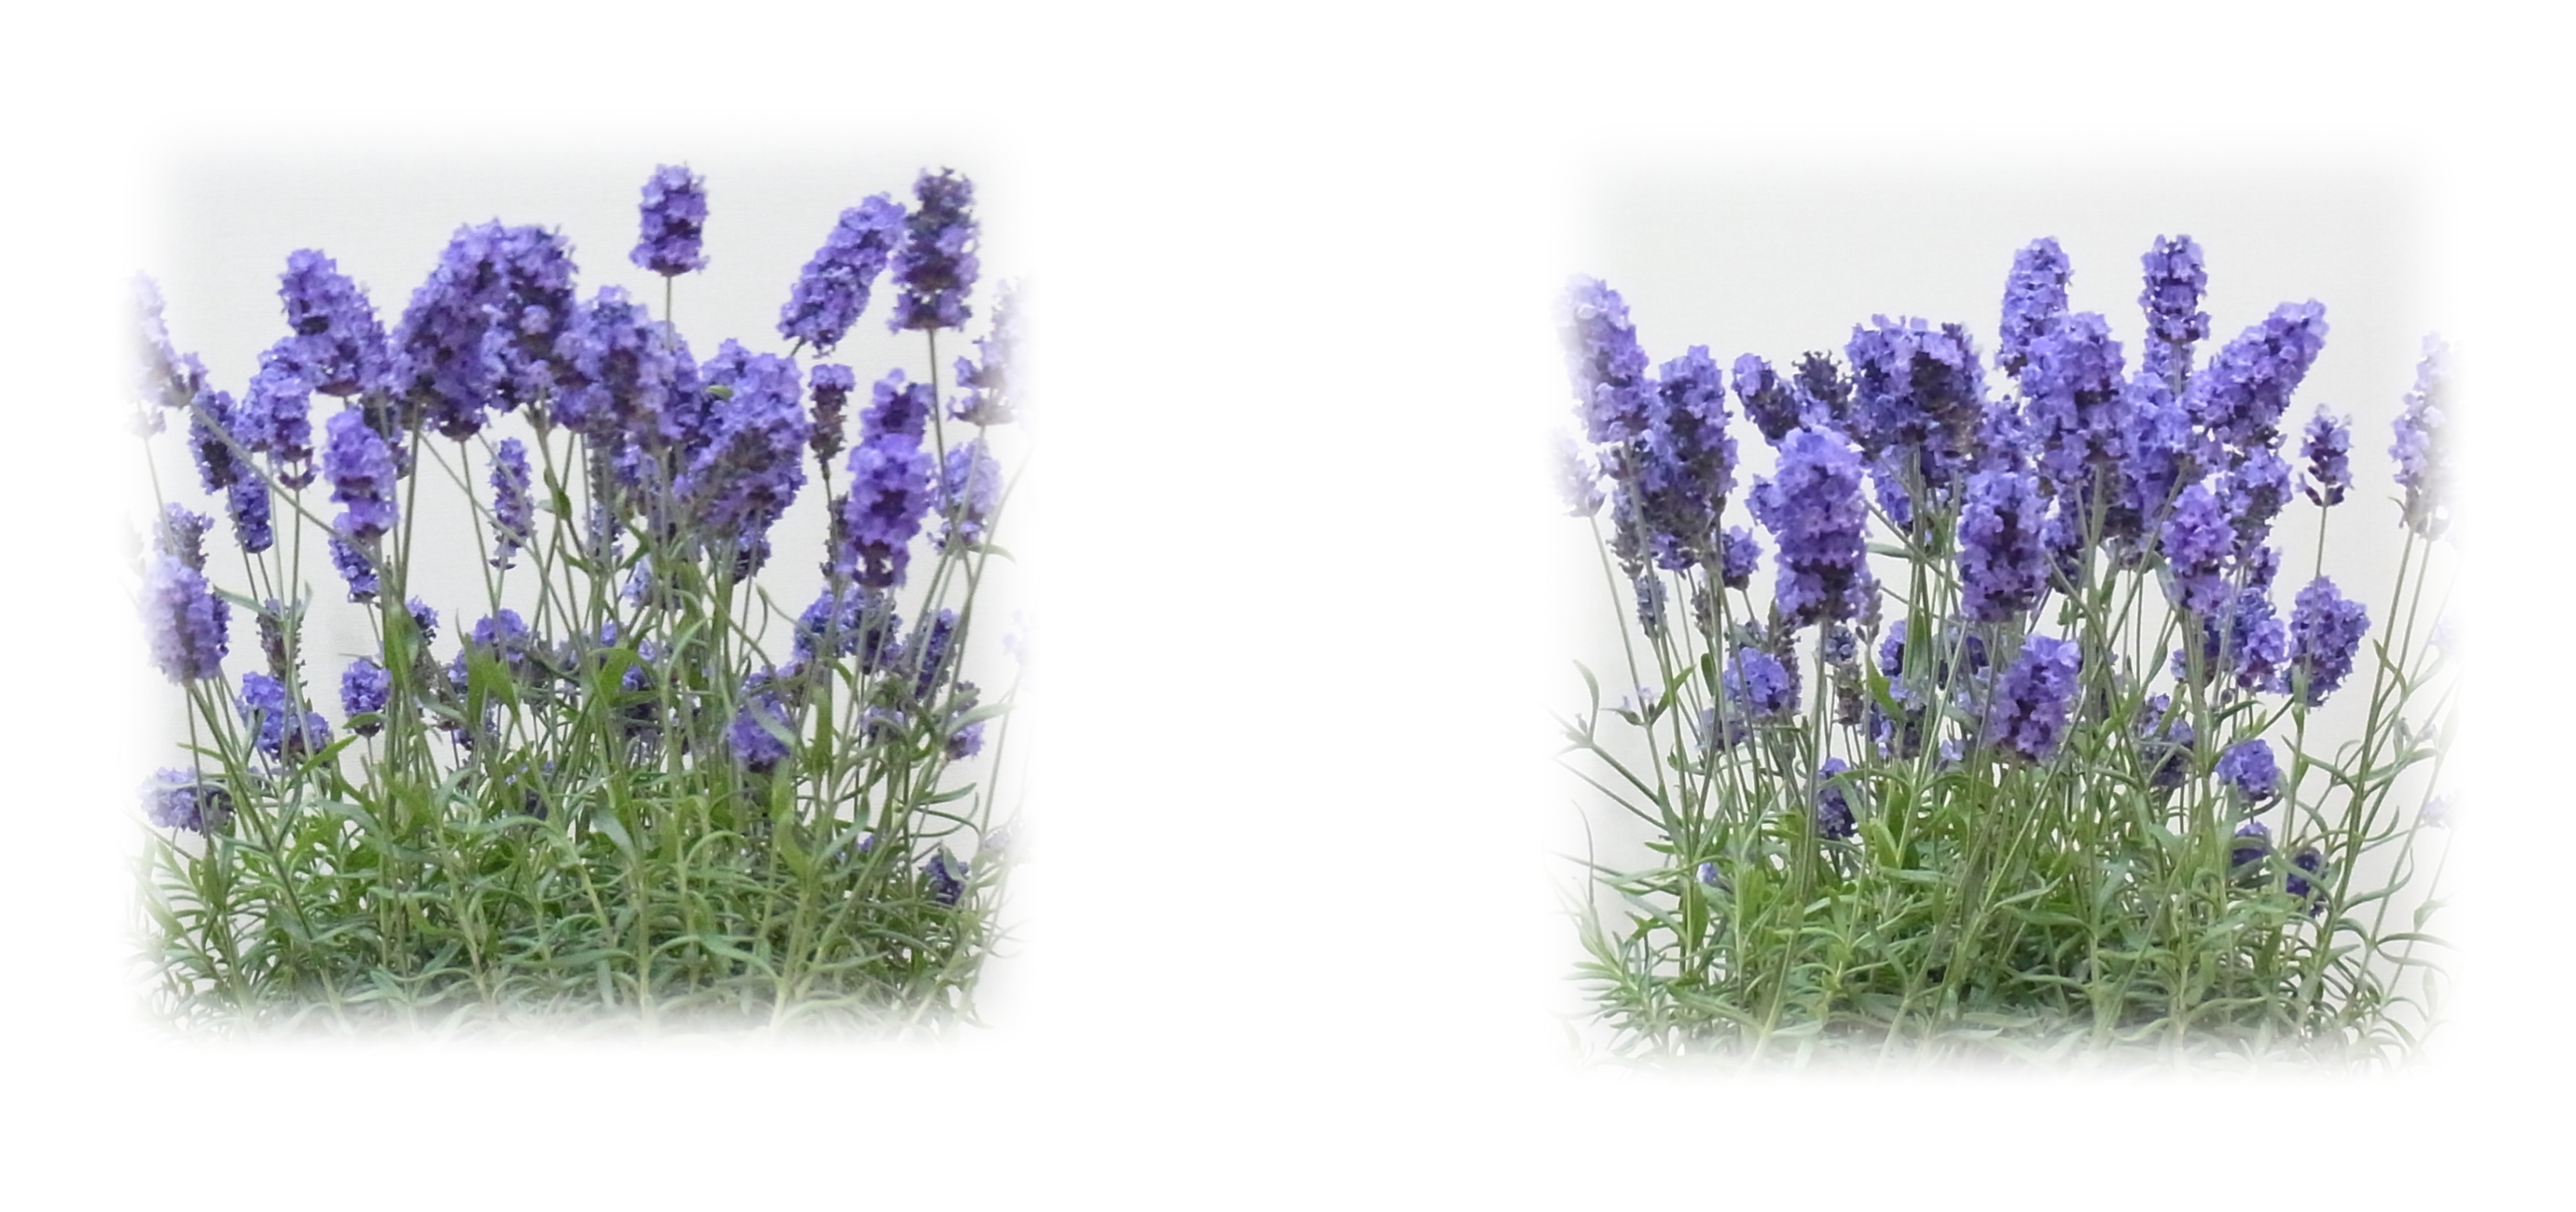 Blooming lavender in flowerpots in Tokyo